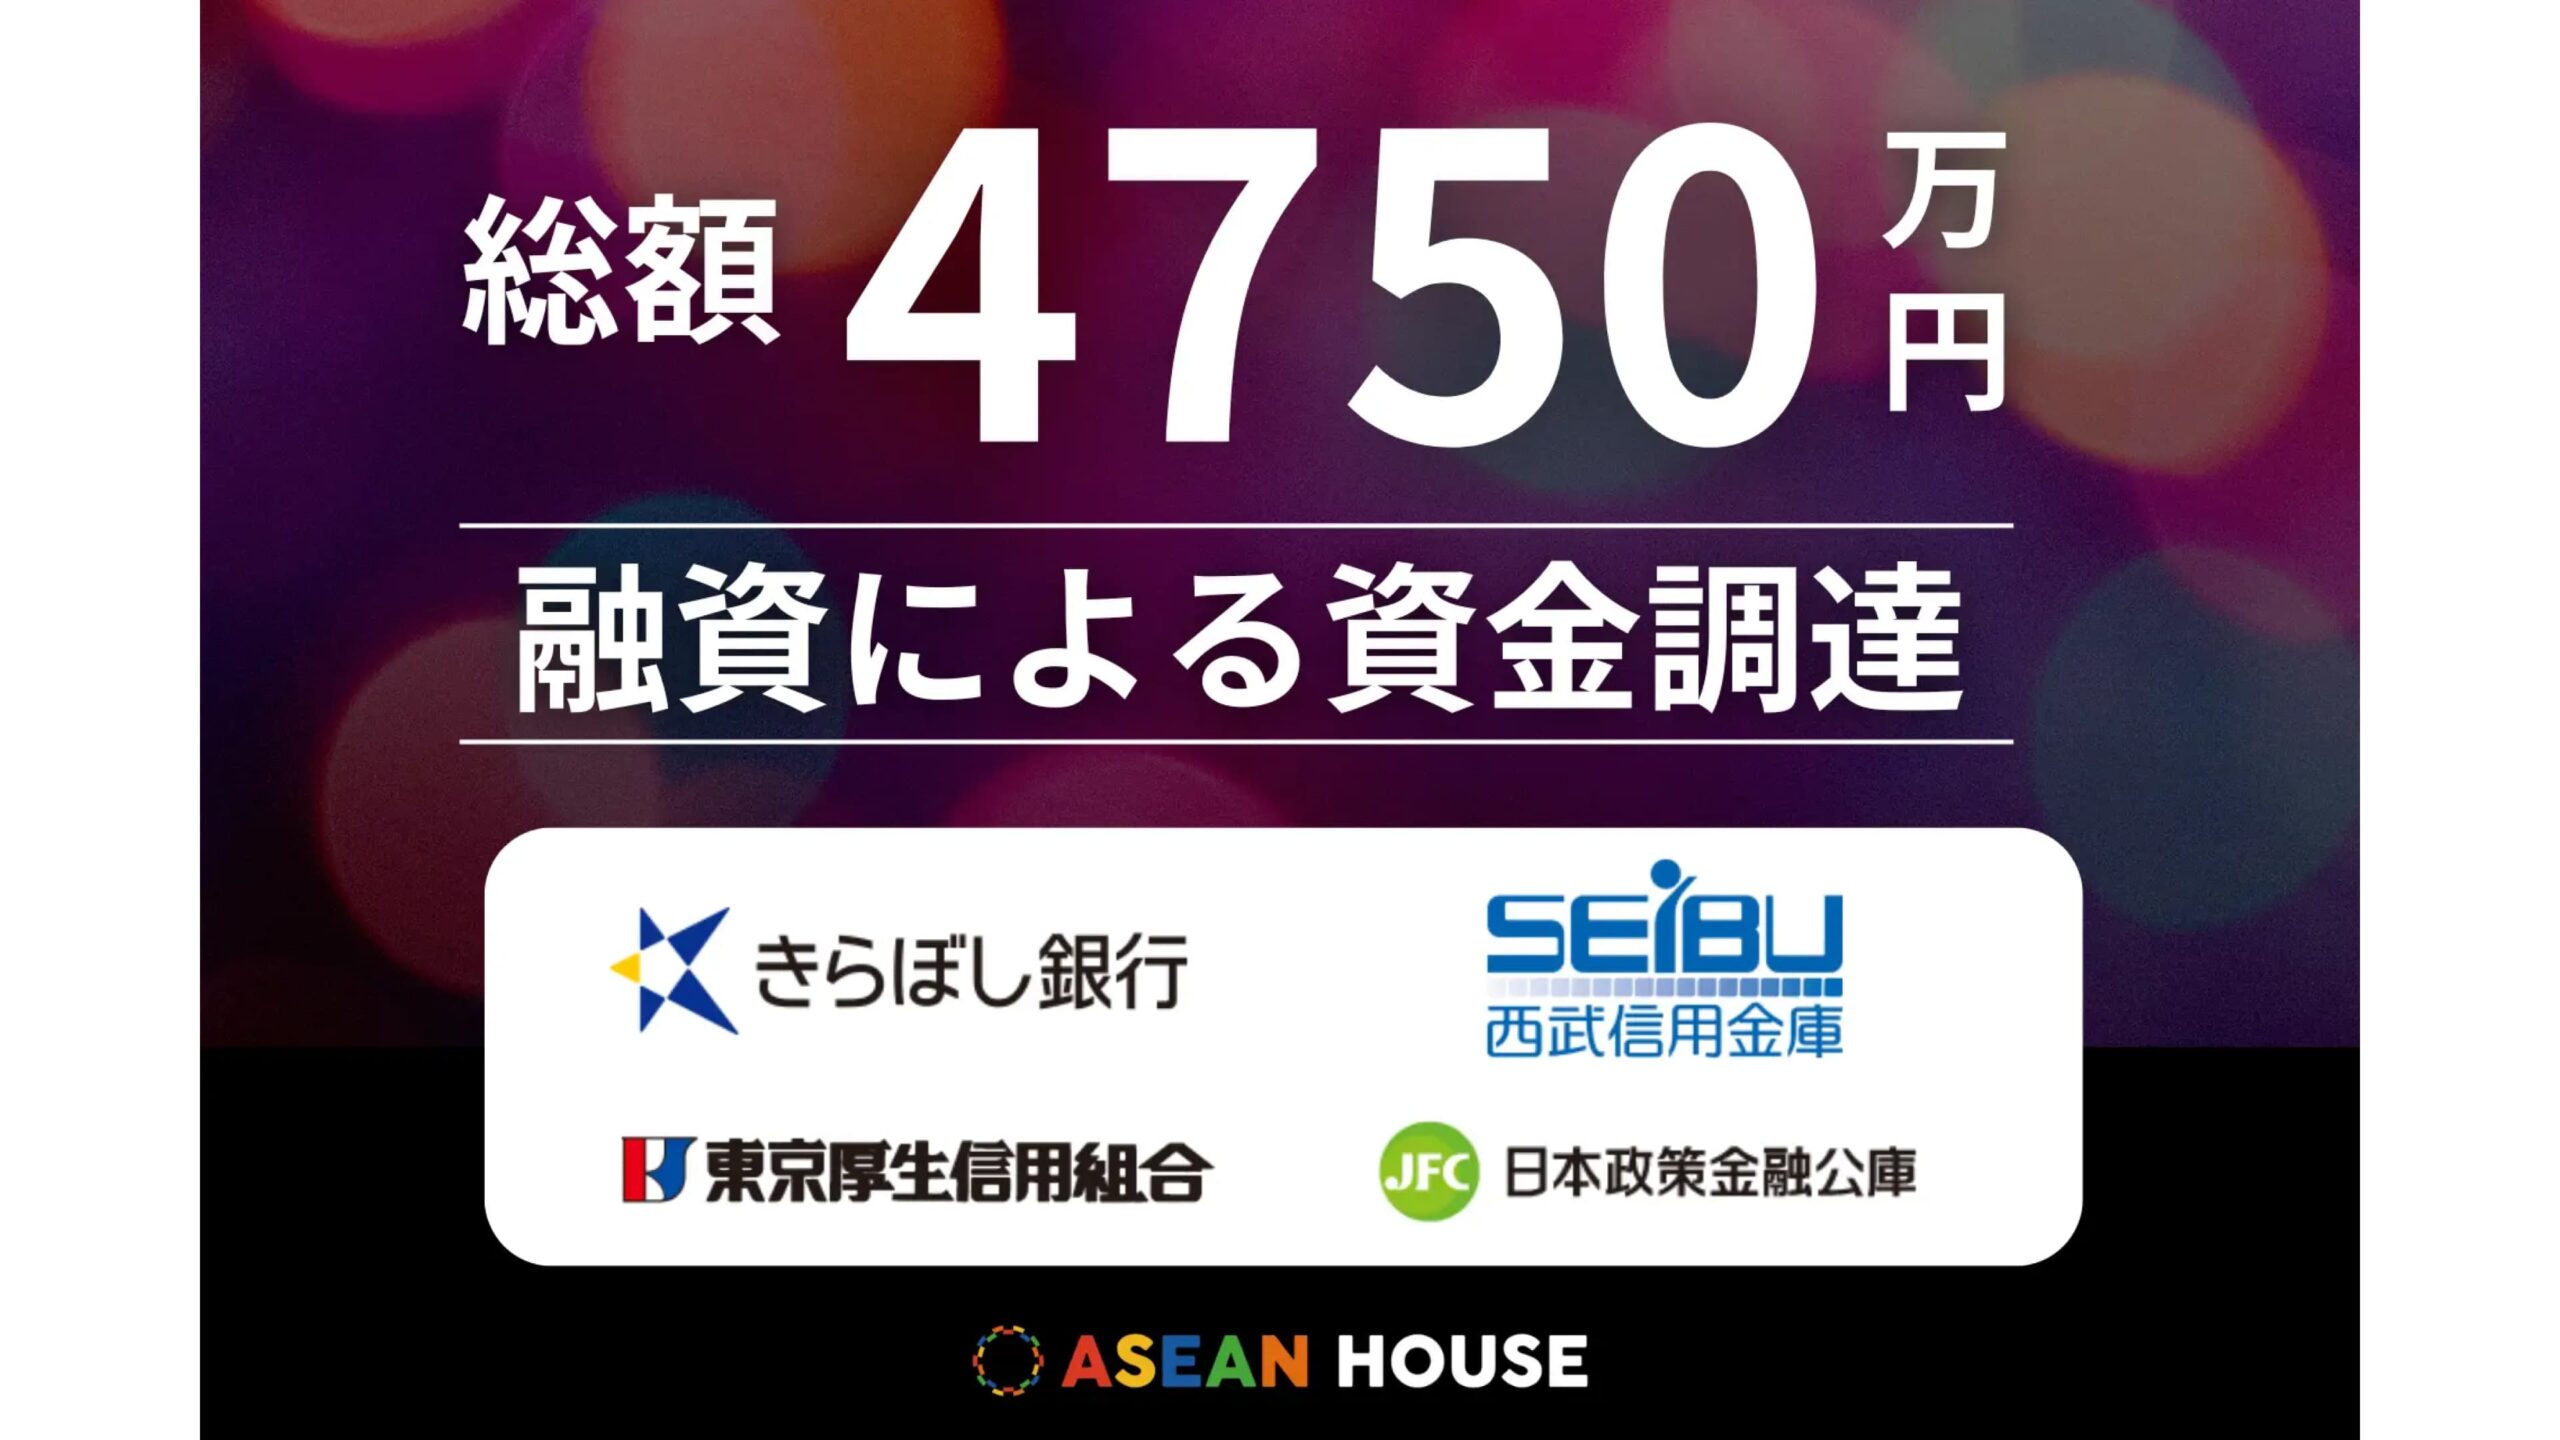 外国人材紹介の株式会社ASEAN HOUSE、総額4,750万円の融資による資金調達を実施